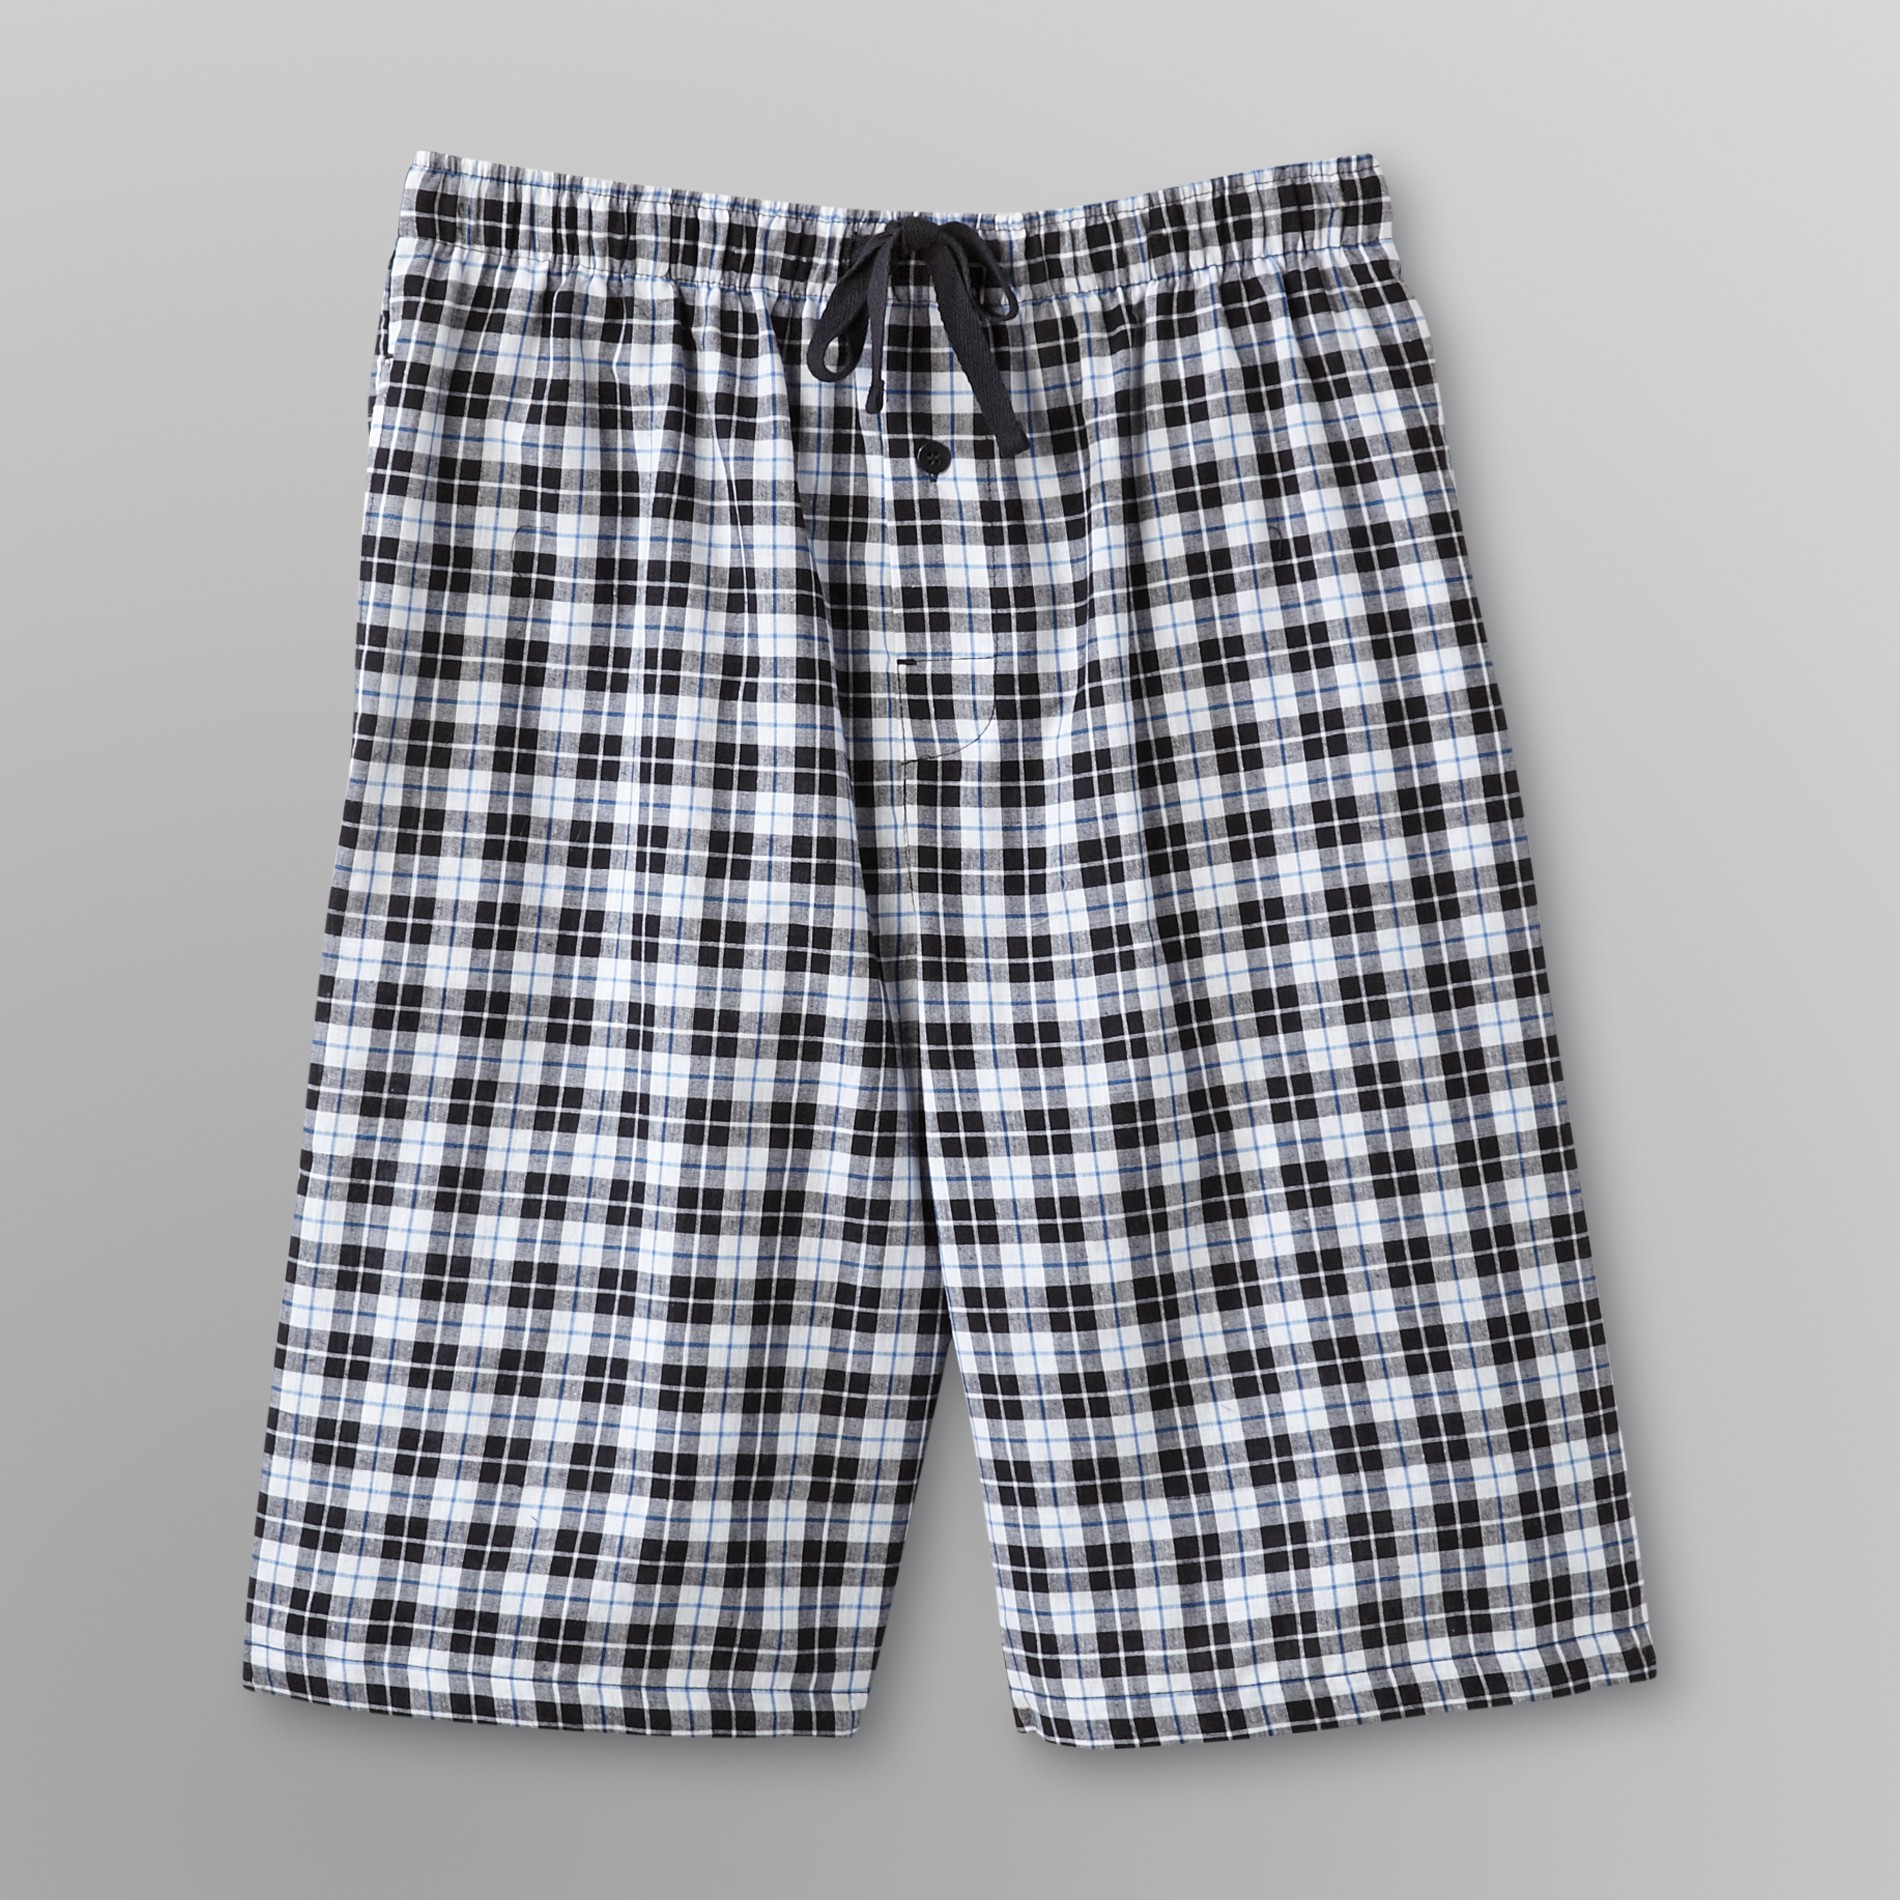 Basic Editions Men's Poplin Pajama Shorts - Plaid